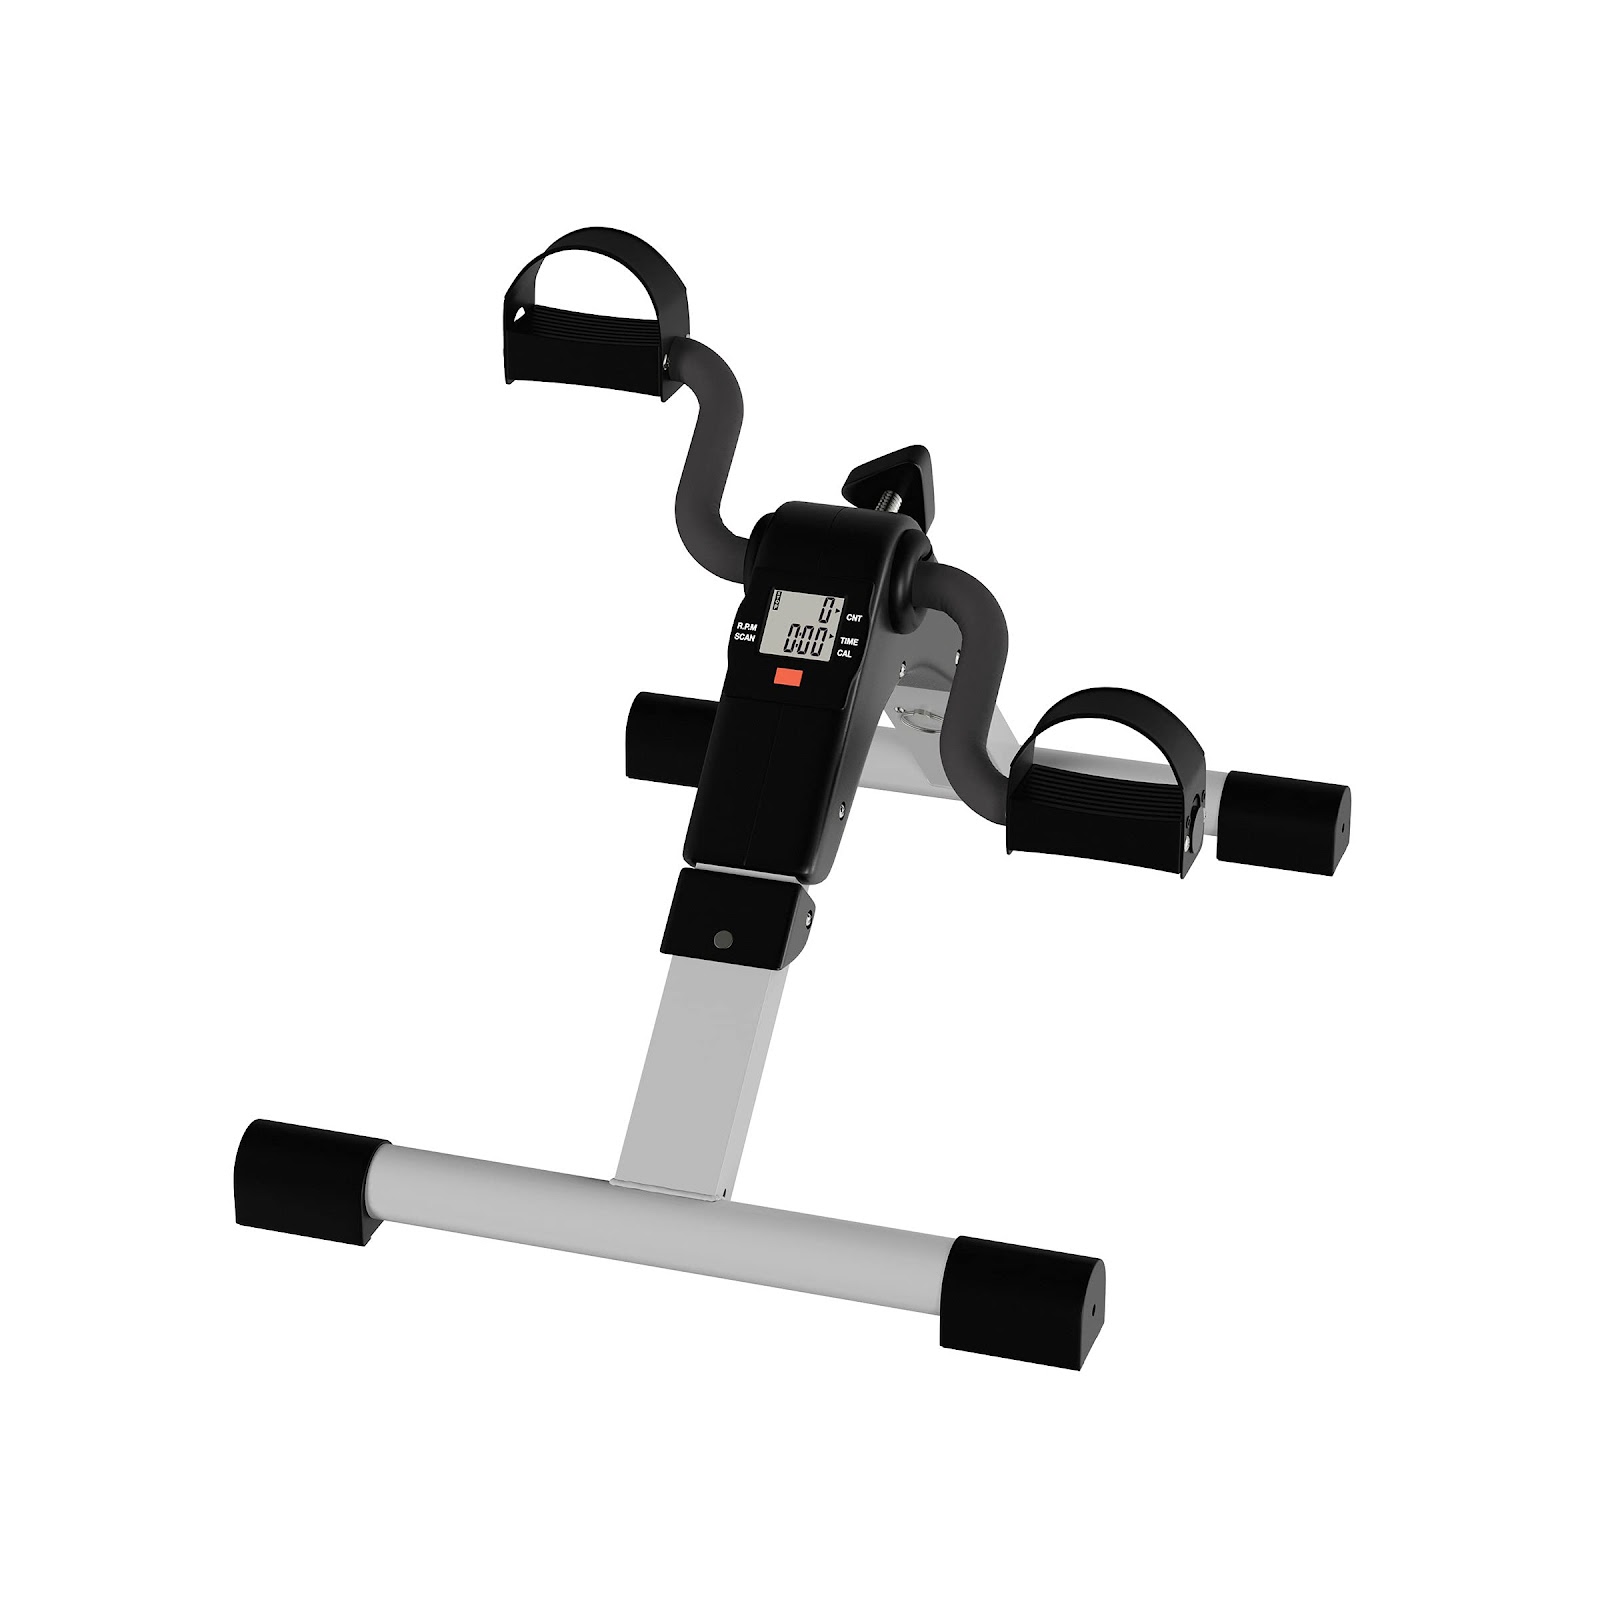 Pedal de ginástica dobrável portátil Wakeman – para exercícios, bicicleta, braços, pernas, fisioterapia, com contador de calorias